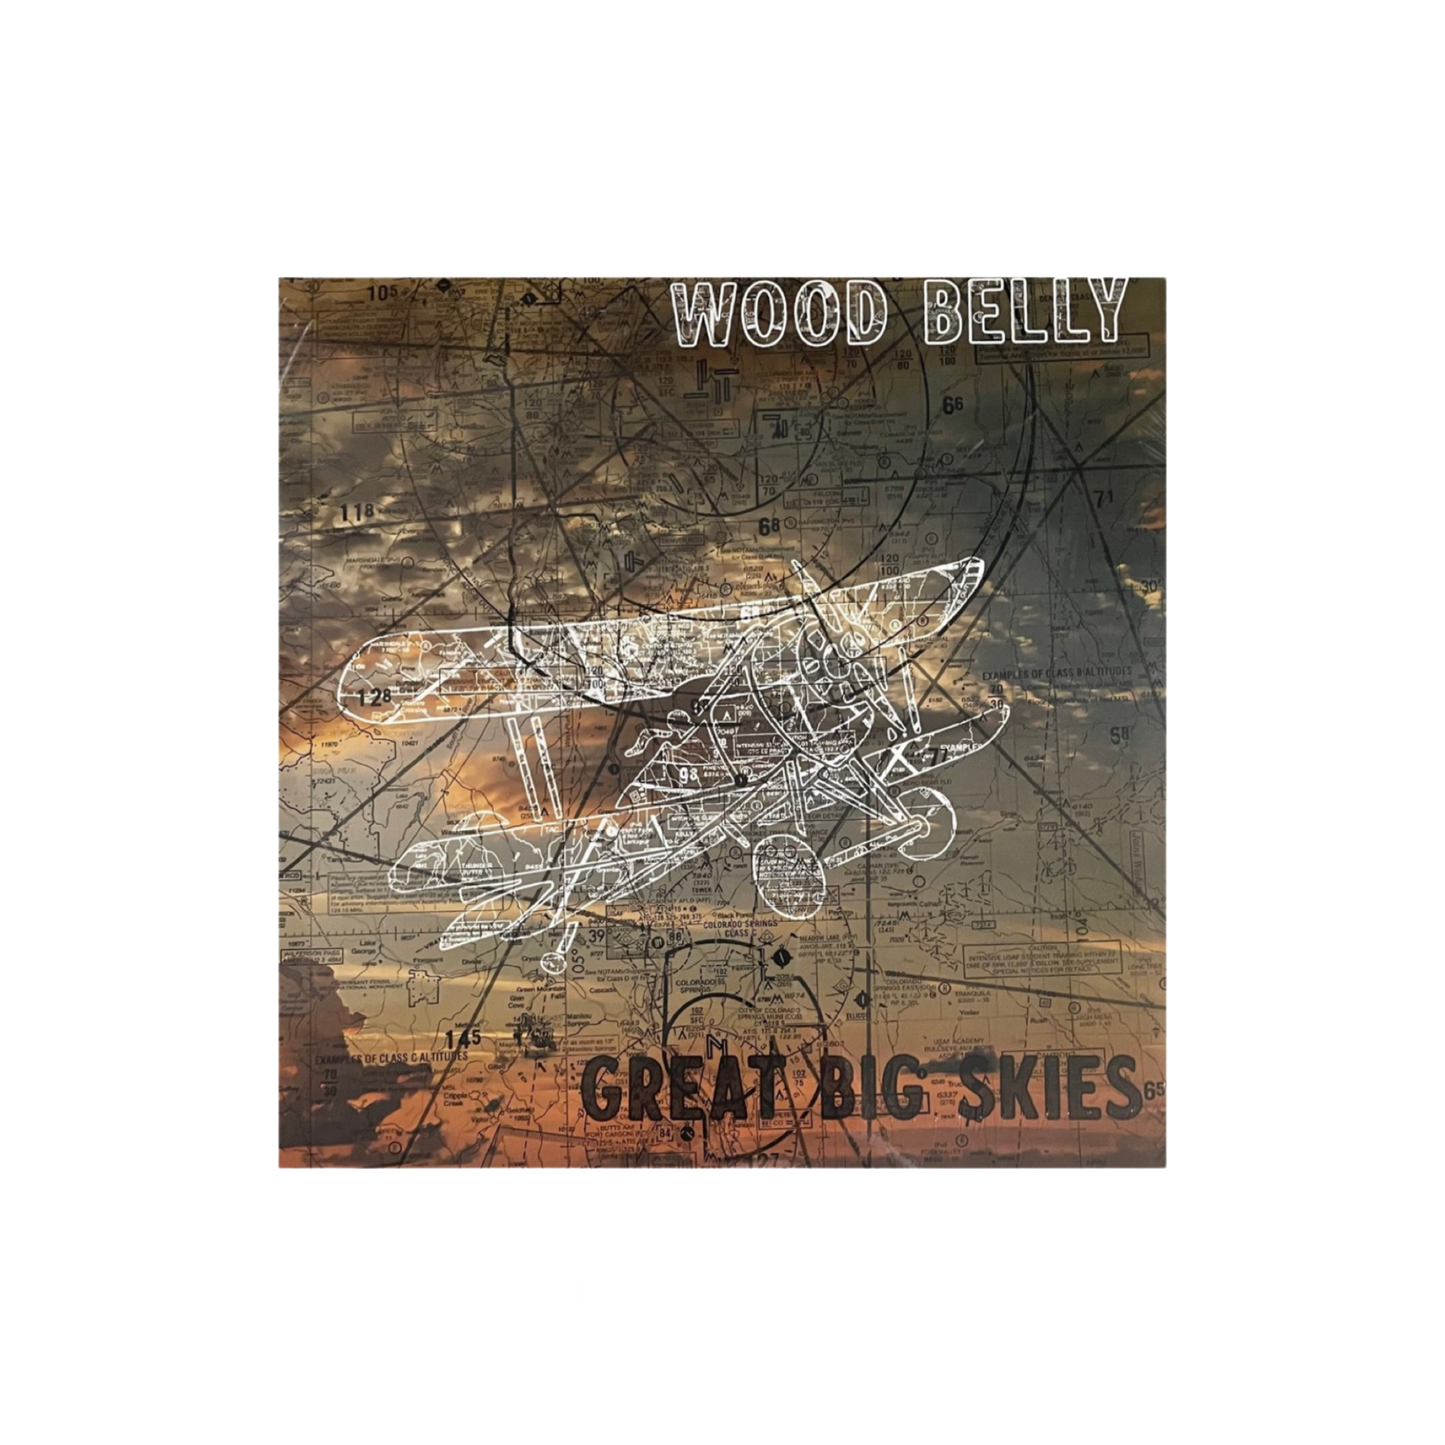 Wood Belly - Great Big Skies Digital Download